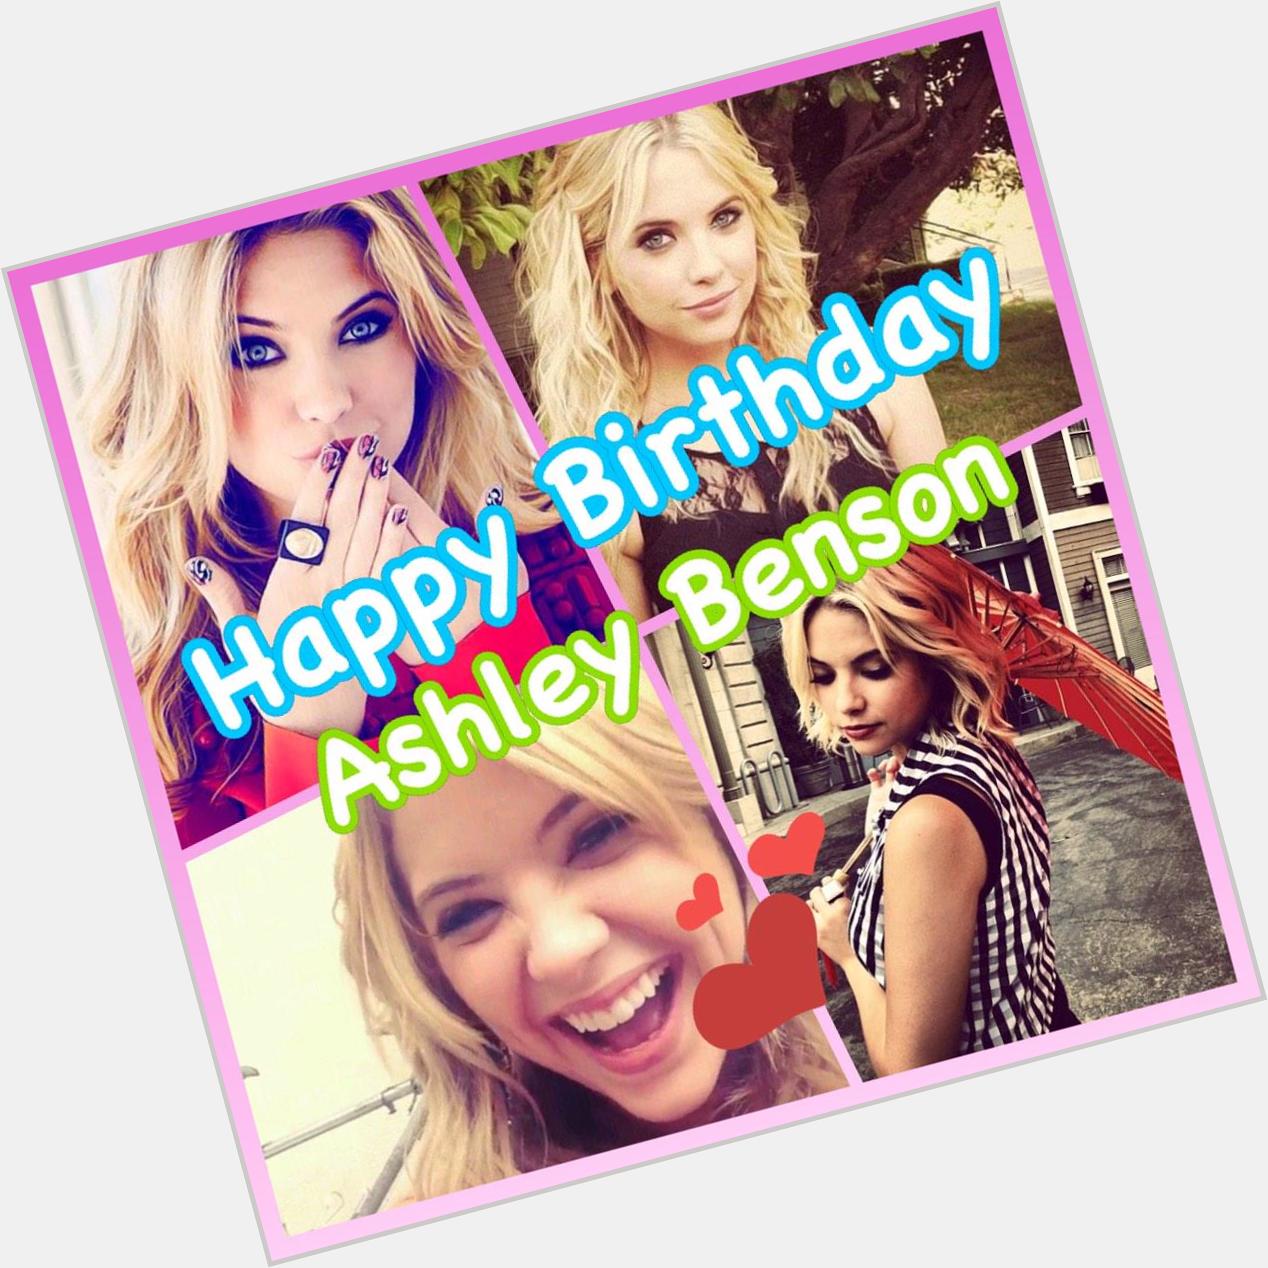    Happy Birthday Ashley Benson  Im a big fan of you .
I love u     